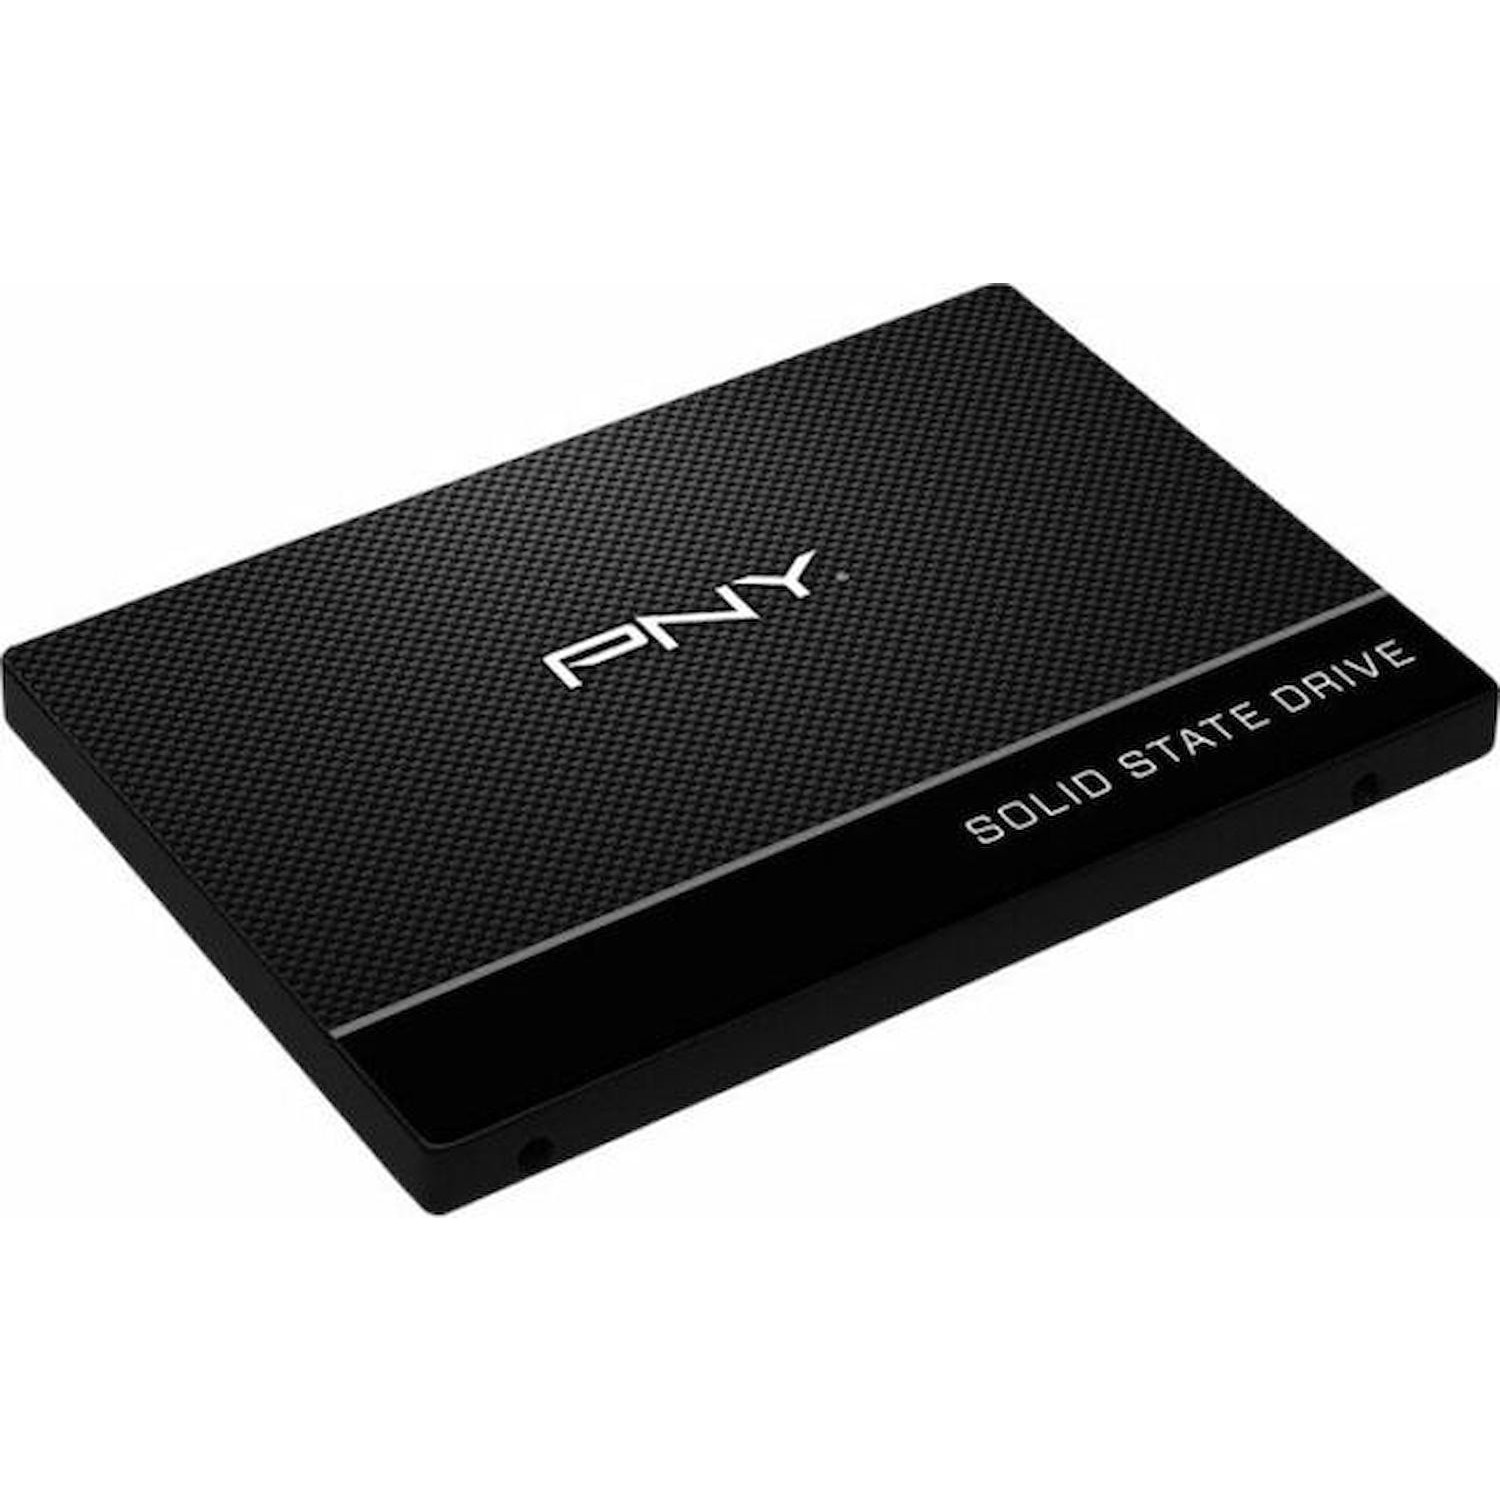 Immagine per HD SSD PNY 480GB 2,5" SATA3 da DIMOStore